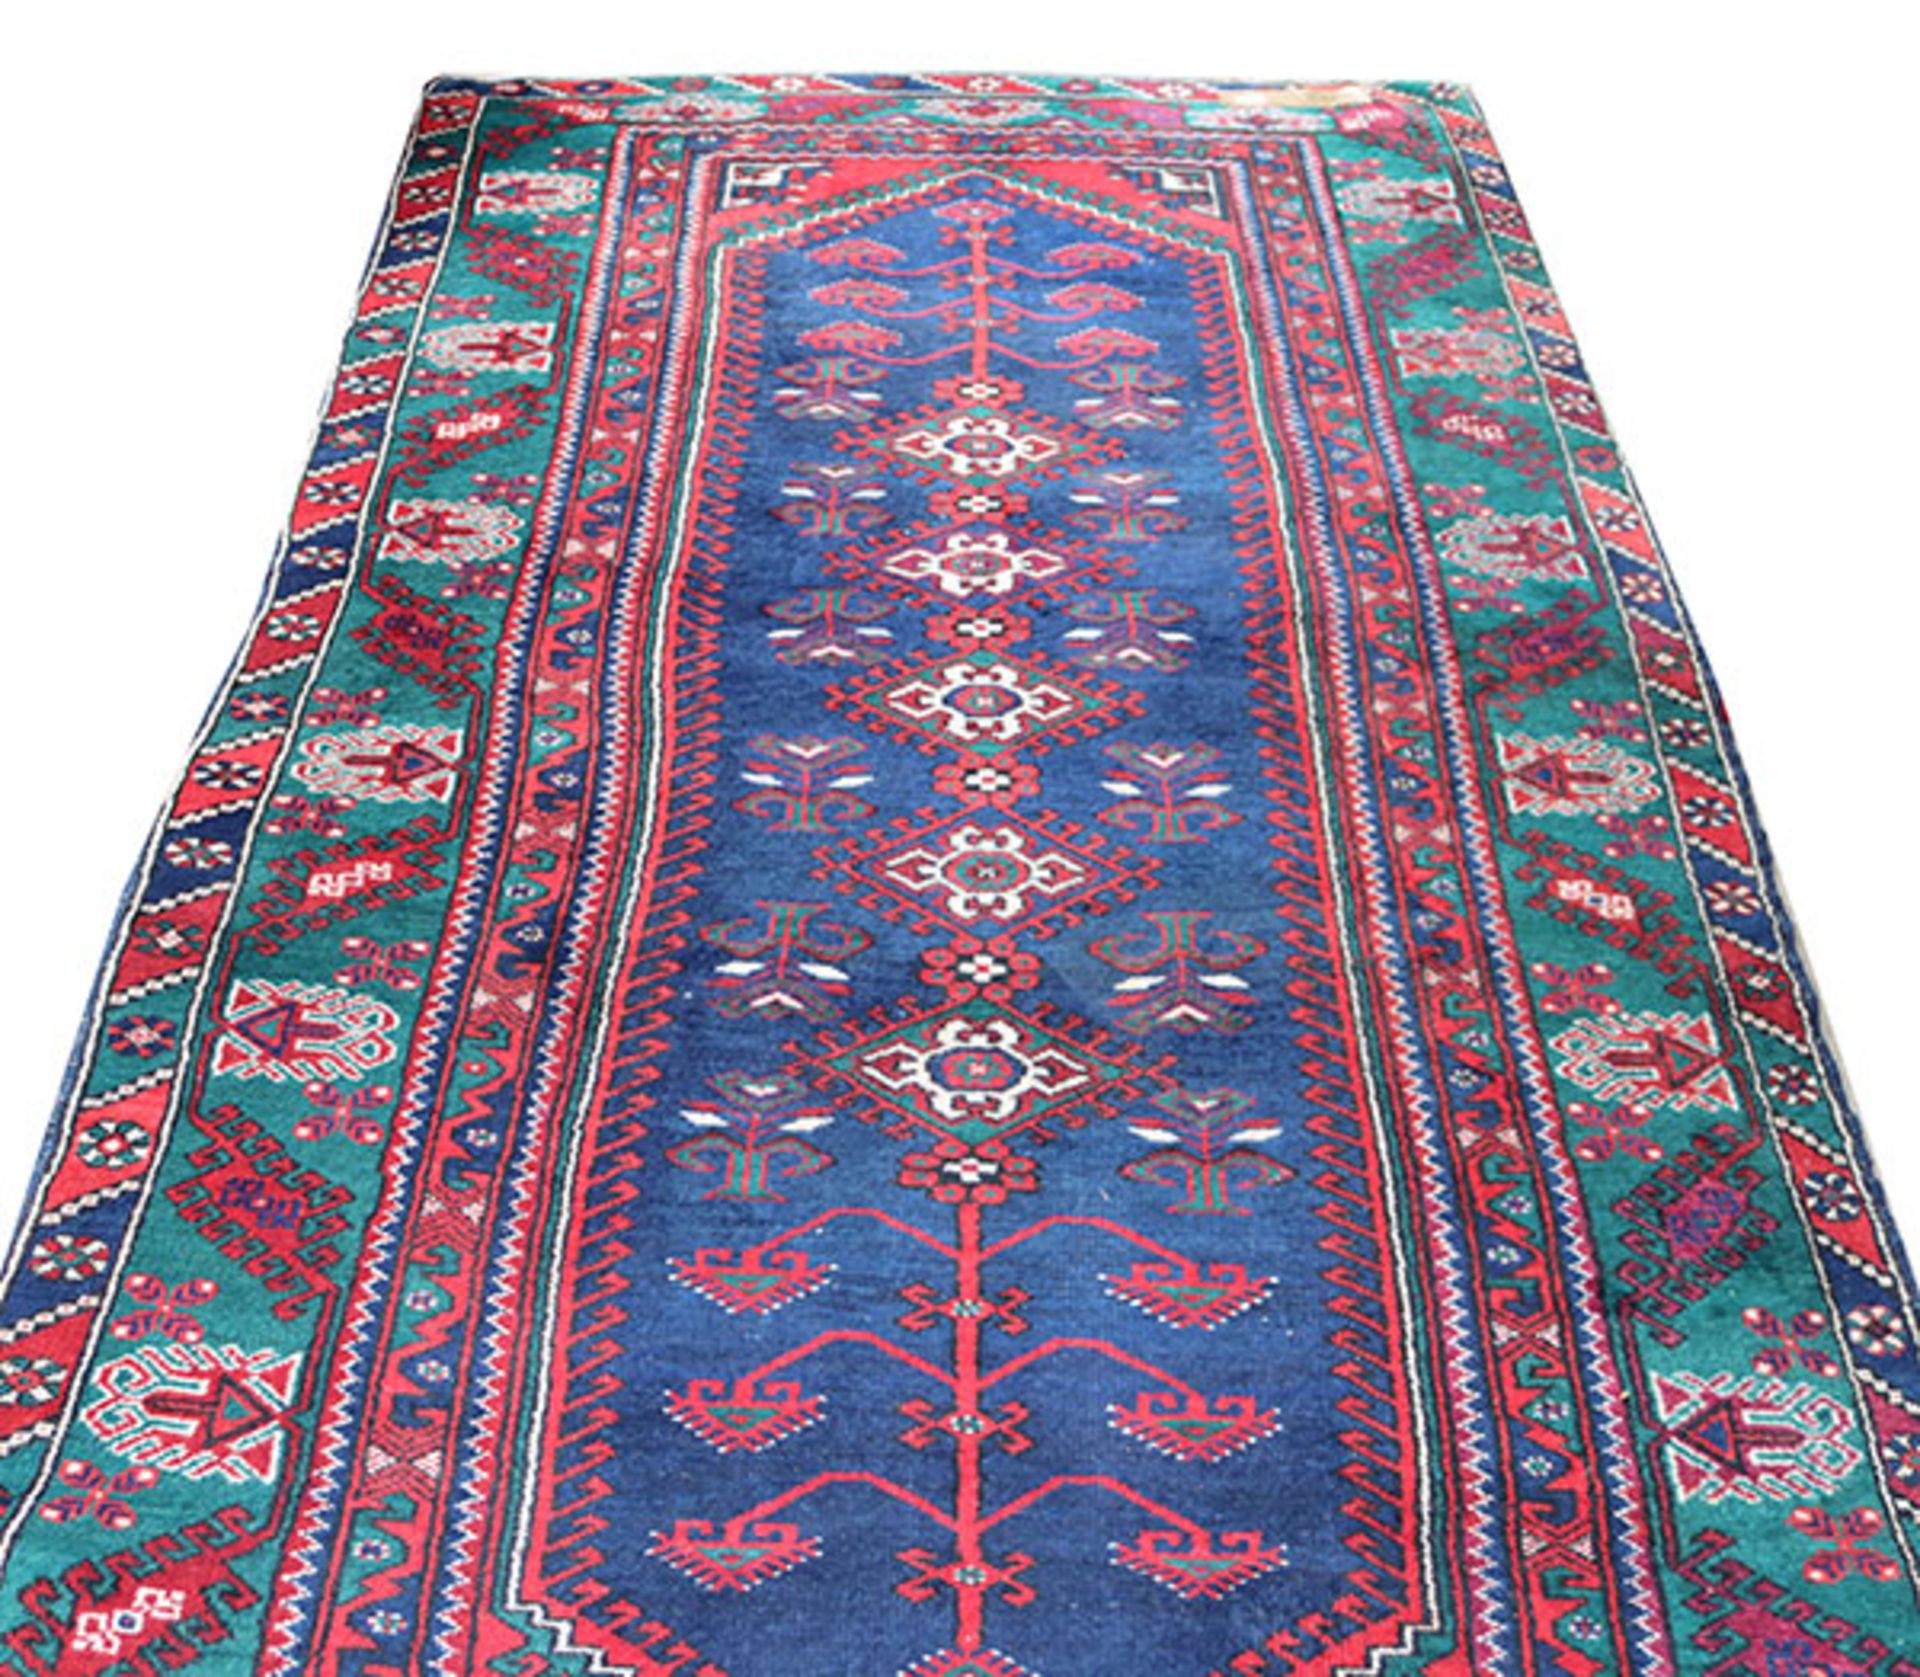 Teppich, blau/rot/bunt, Gebrauchsspuren, 147 cm x 280 cm